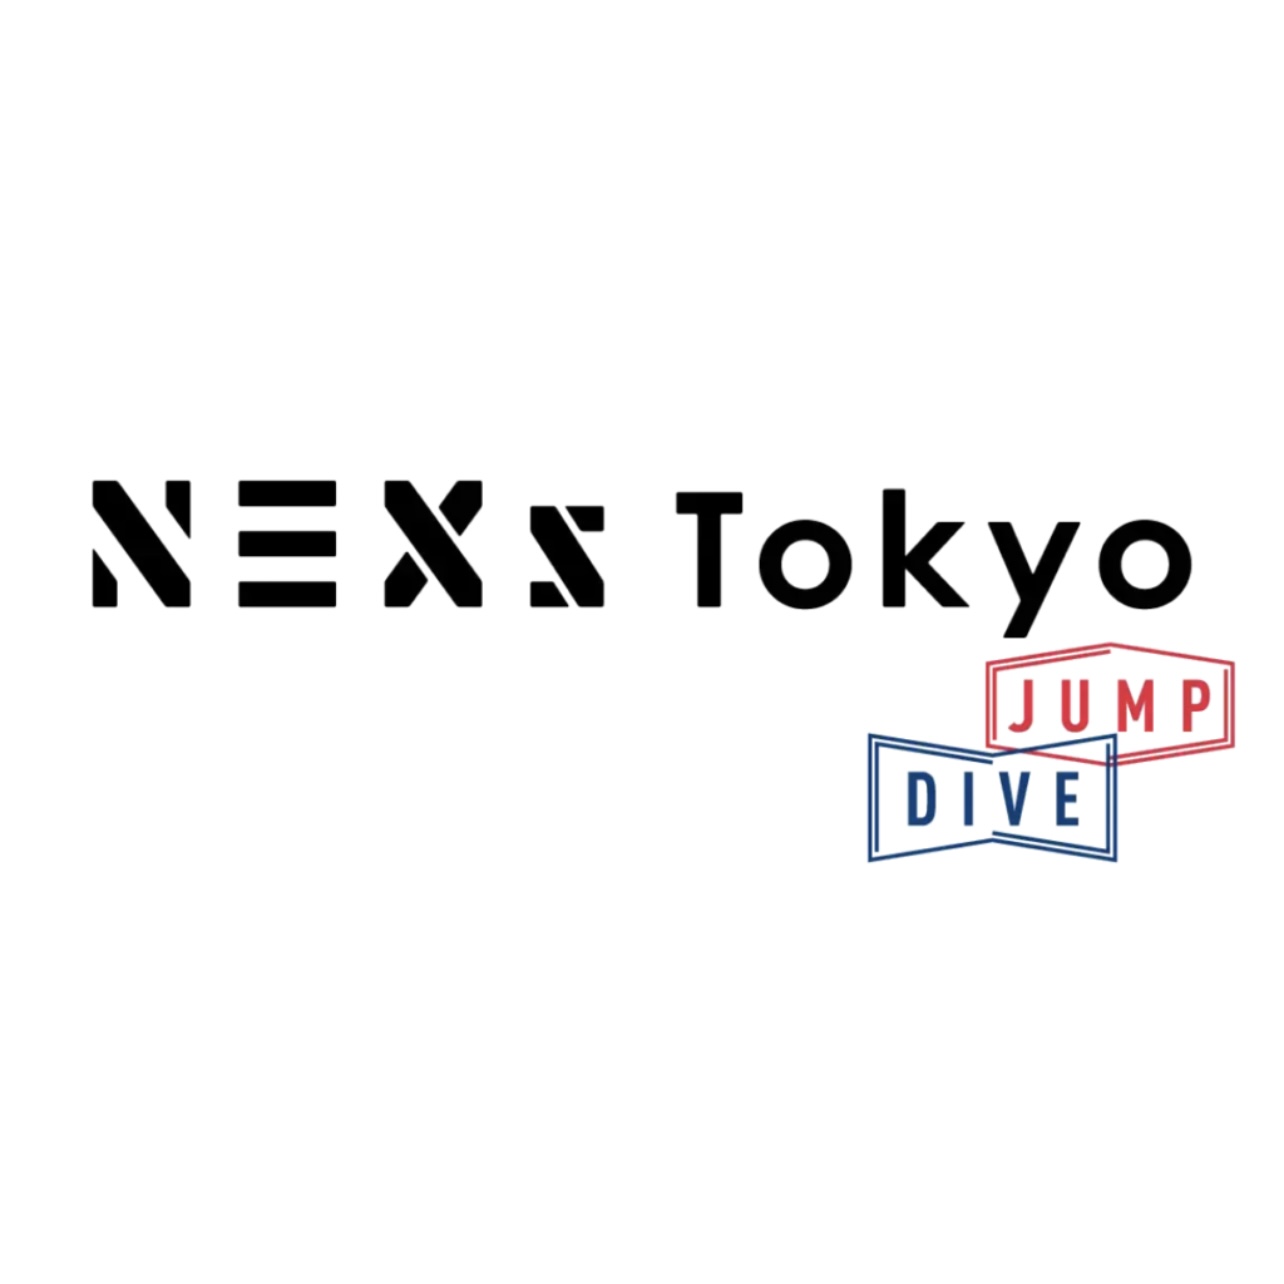 NEXs Tokyo 会員スタートアップ「JUMPコース」採択のお知らせ